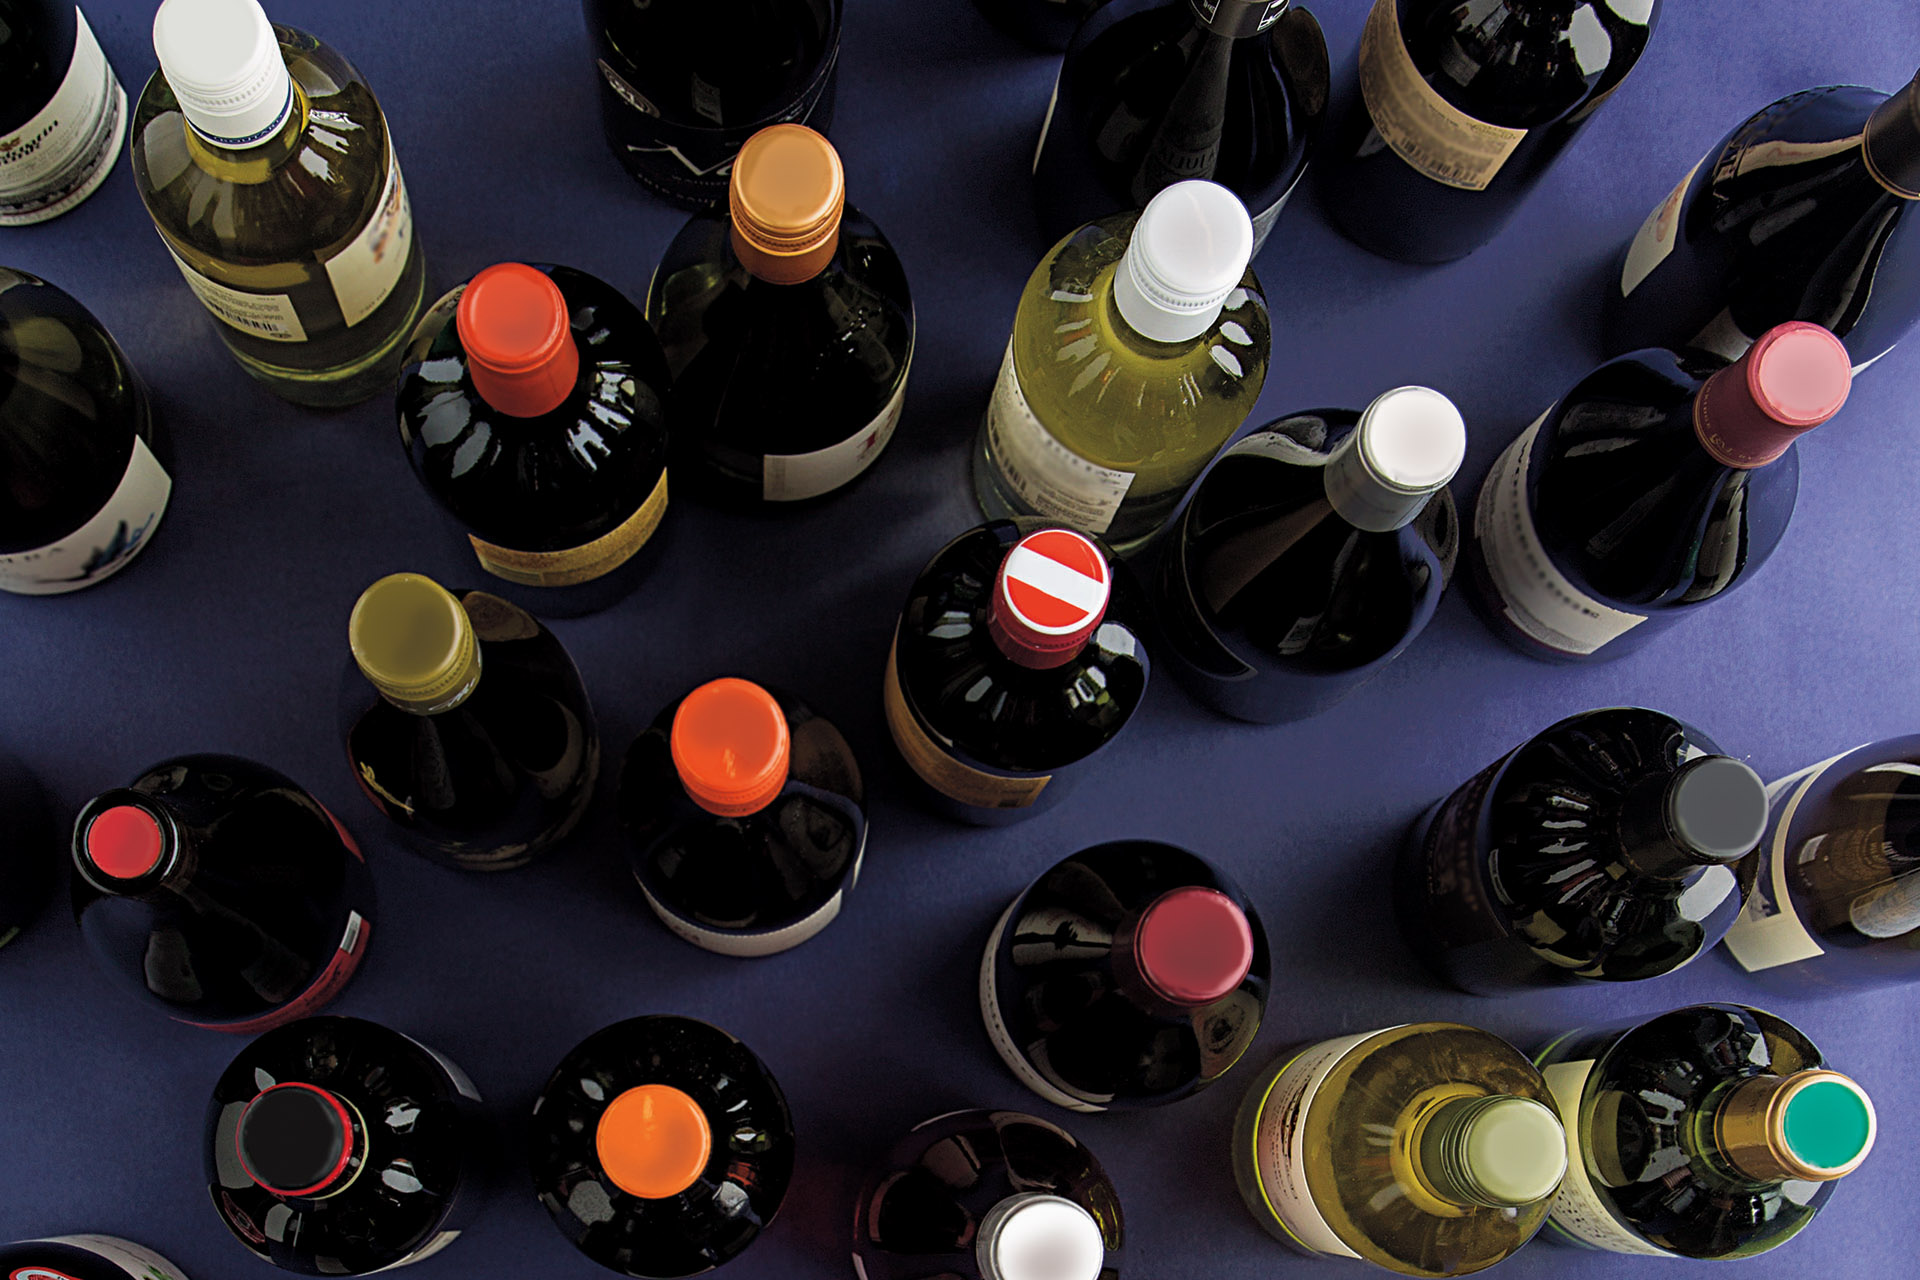 As melhores 100 compras de vinhos para a Wine Enthusiast